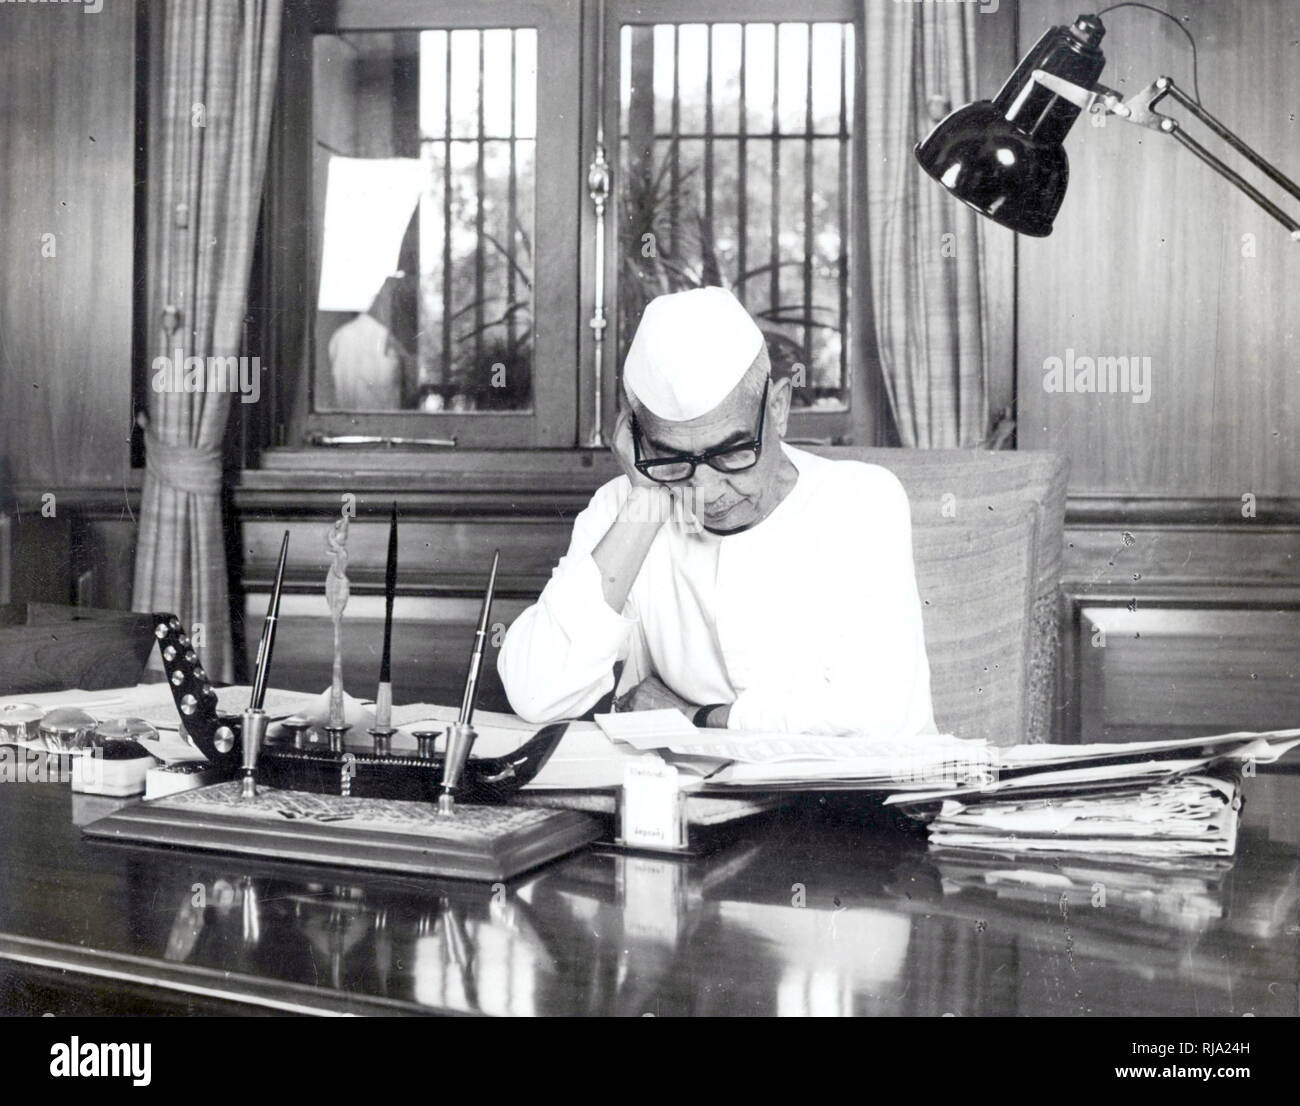 Chaudhary Charan Singh (1902-1987); 5. der indische Premierminister, vom 28, Juli 1979 bis zum 14. Januar 1980. Janata Party (1977-1979) Stockfoto